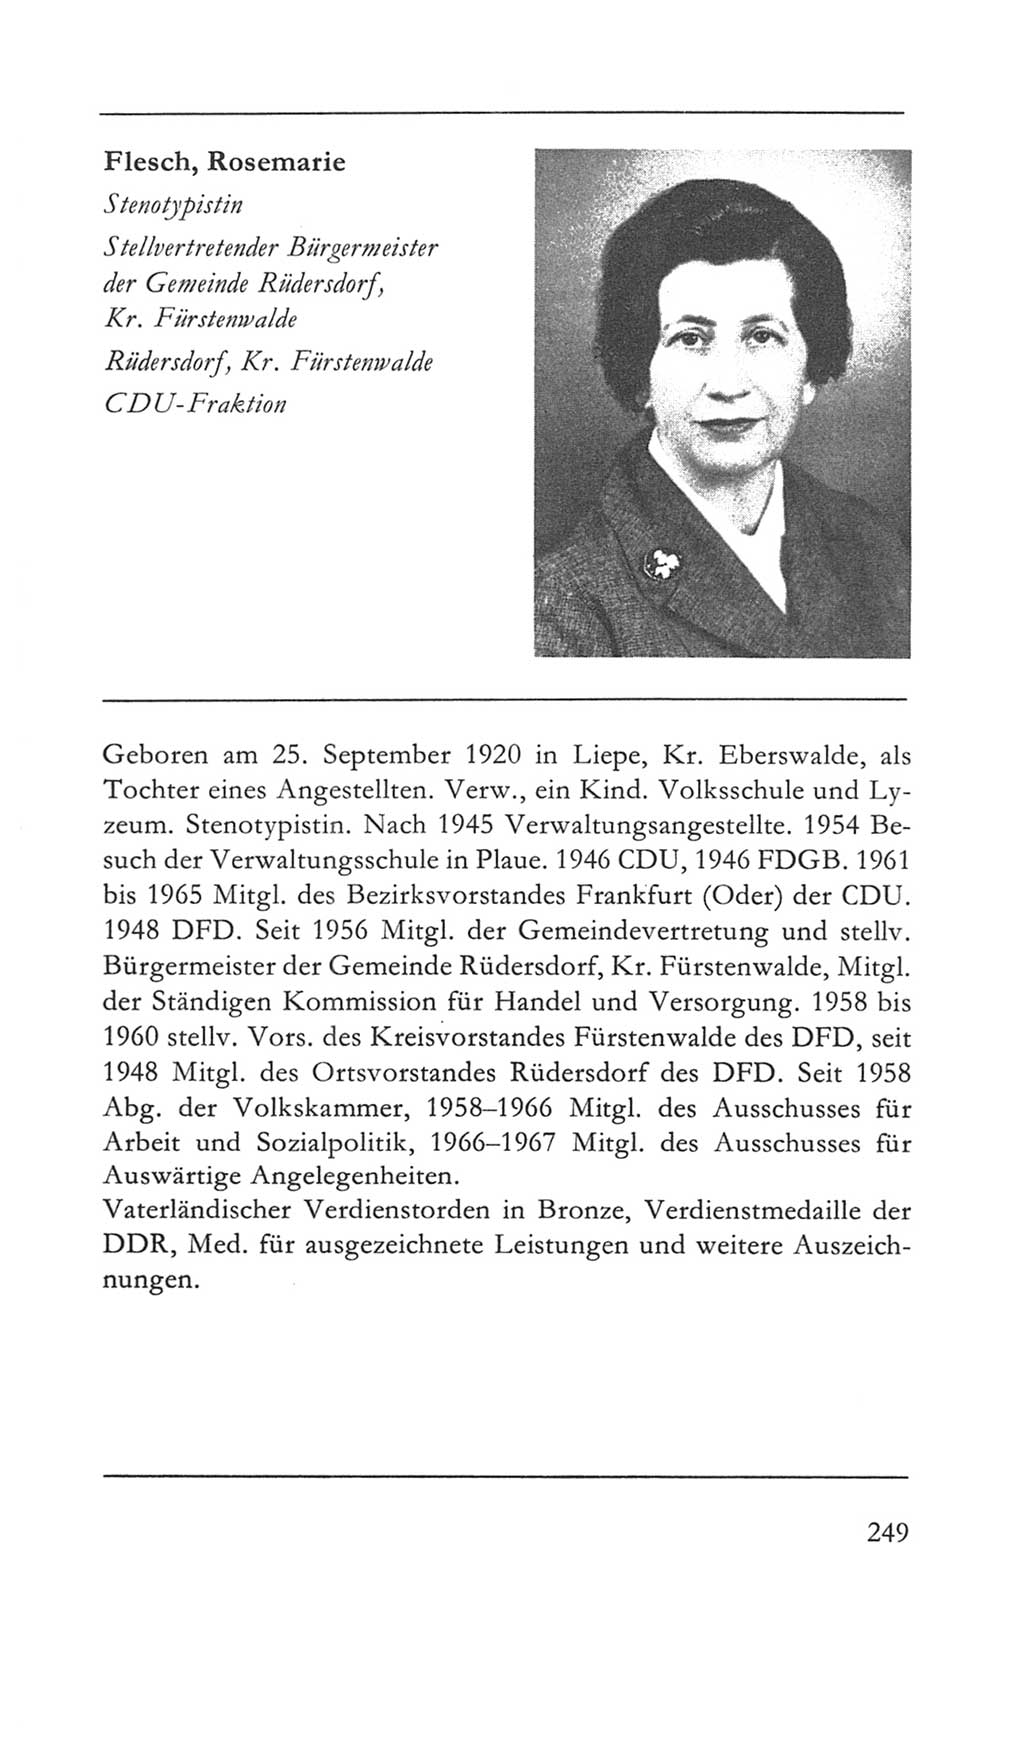 Volkskammer (VK) der Deutschen Demokratischen Republik (DDR) 5. Wahlperiode 1967-1971, Seite 249 (VK. DDR 5. WP. 1967-1971, S. 249)